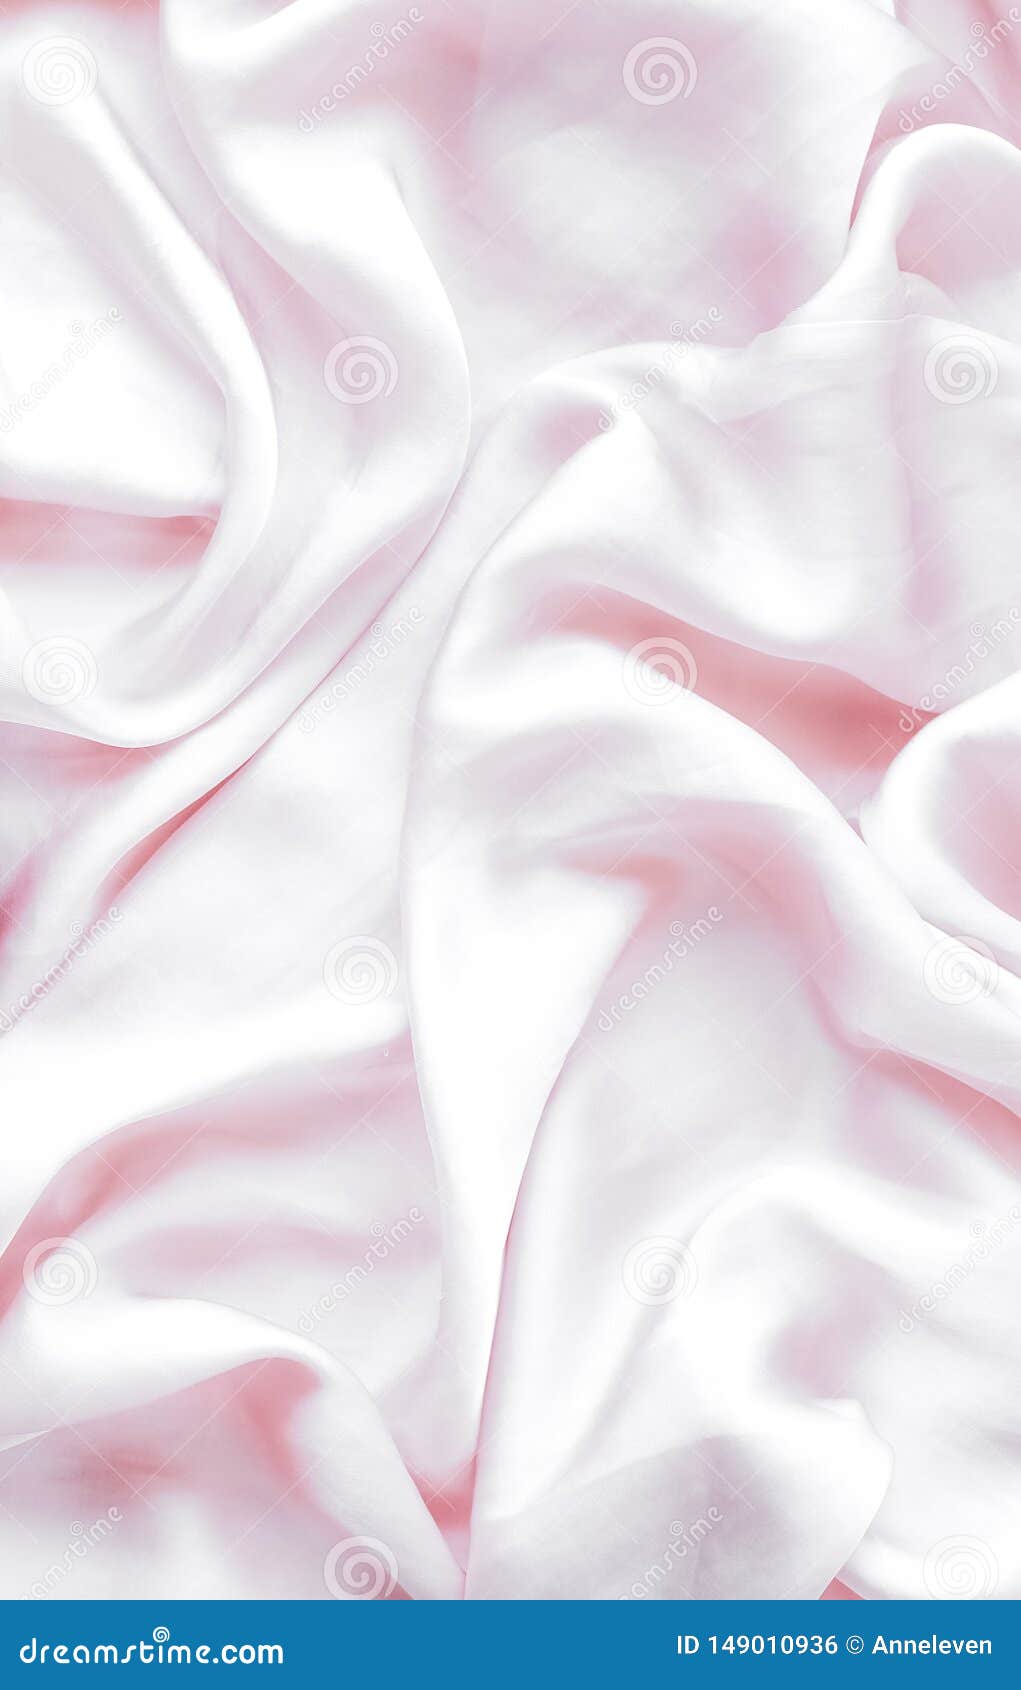 Texture vải tơ mềm hồng nền flatlay: Mặc dù được dùng rất nhiều trong thiết kế thời trang, nhưng texture vải tơ mềm hồng nền flatlay lại mang đến một hình ảnh mới mẻ và tinh tế hơn. Hãy để sự khéo léo của bạn được thể hiện qua cách sắp đặt các sản phẩm trên nền vải tơ hồng trang nhã này.